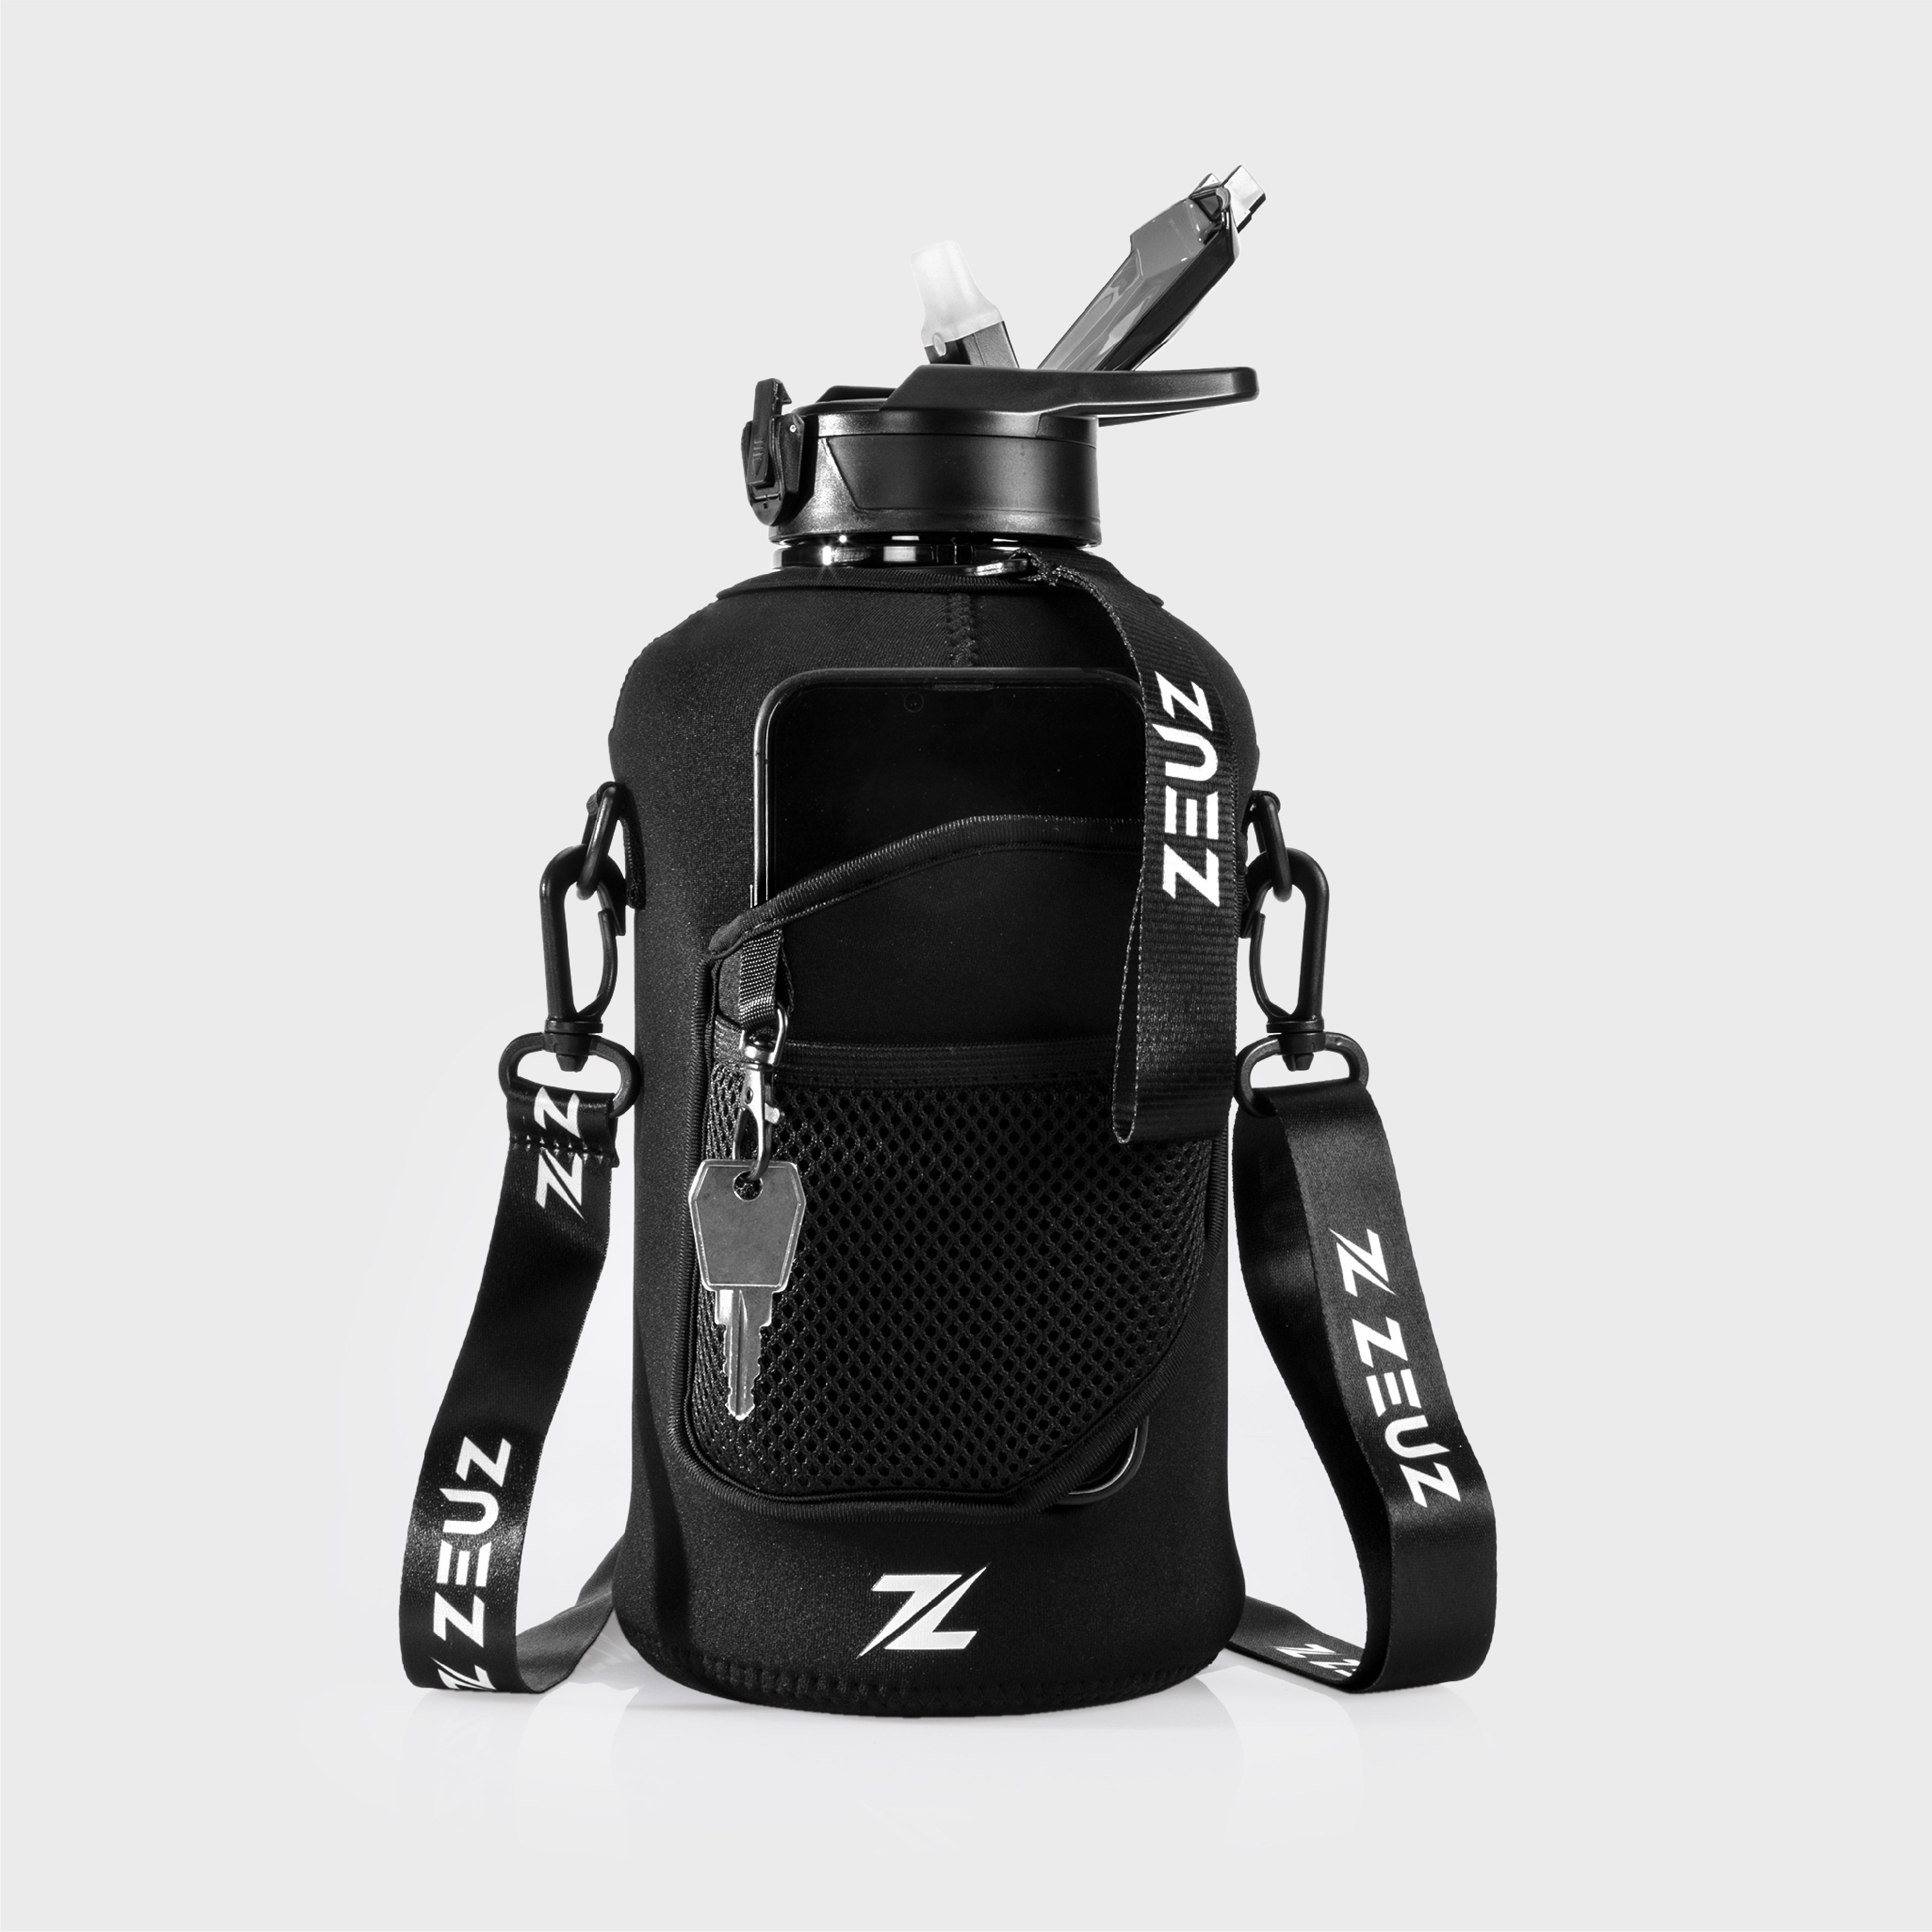 ZEUZ 2.2 Liter Trink flasche - Schwarz